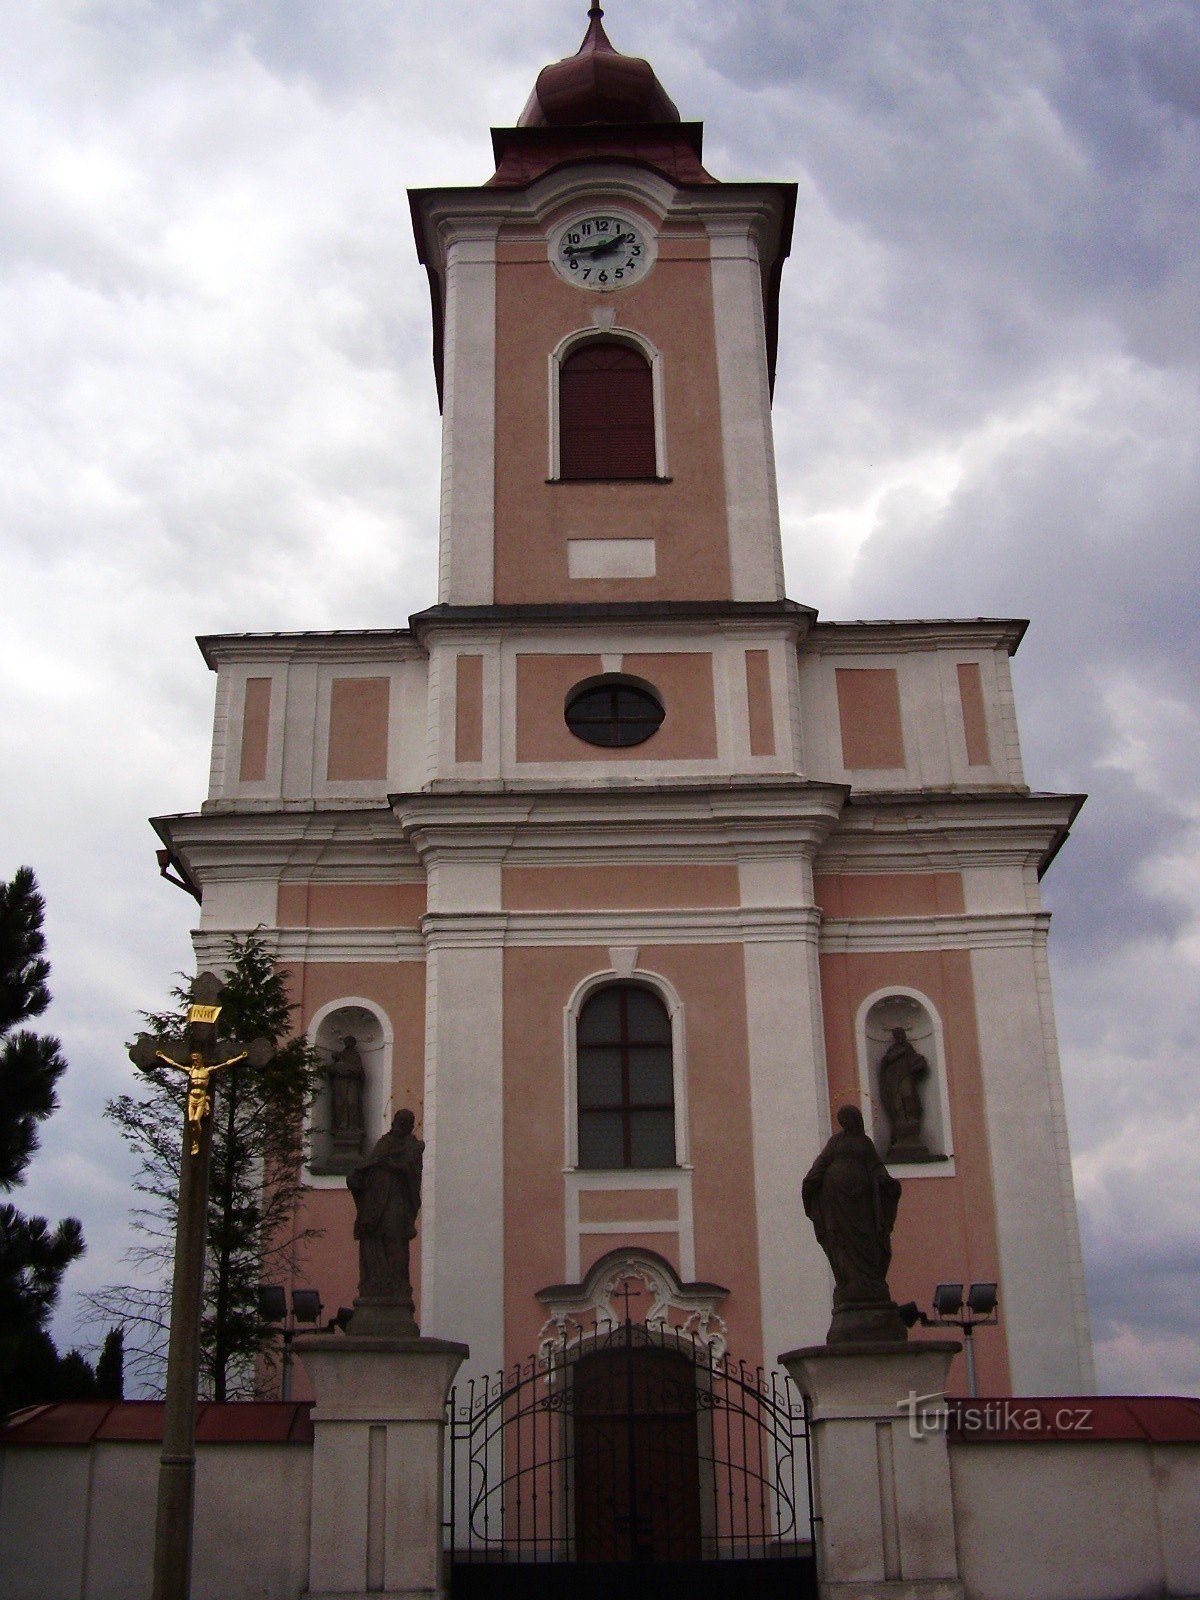 Nové Veselí - chiesa e statue